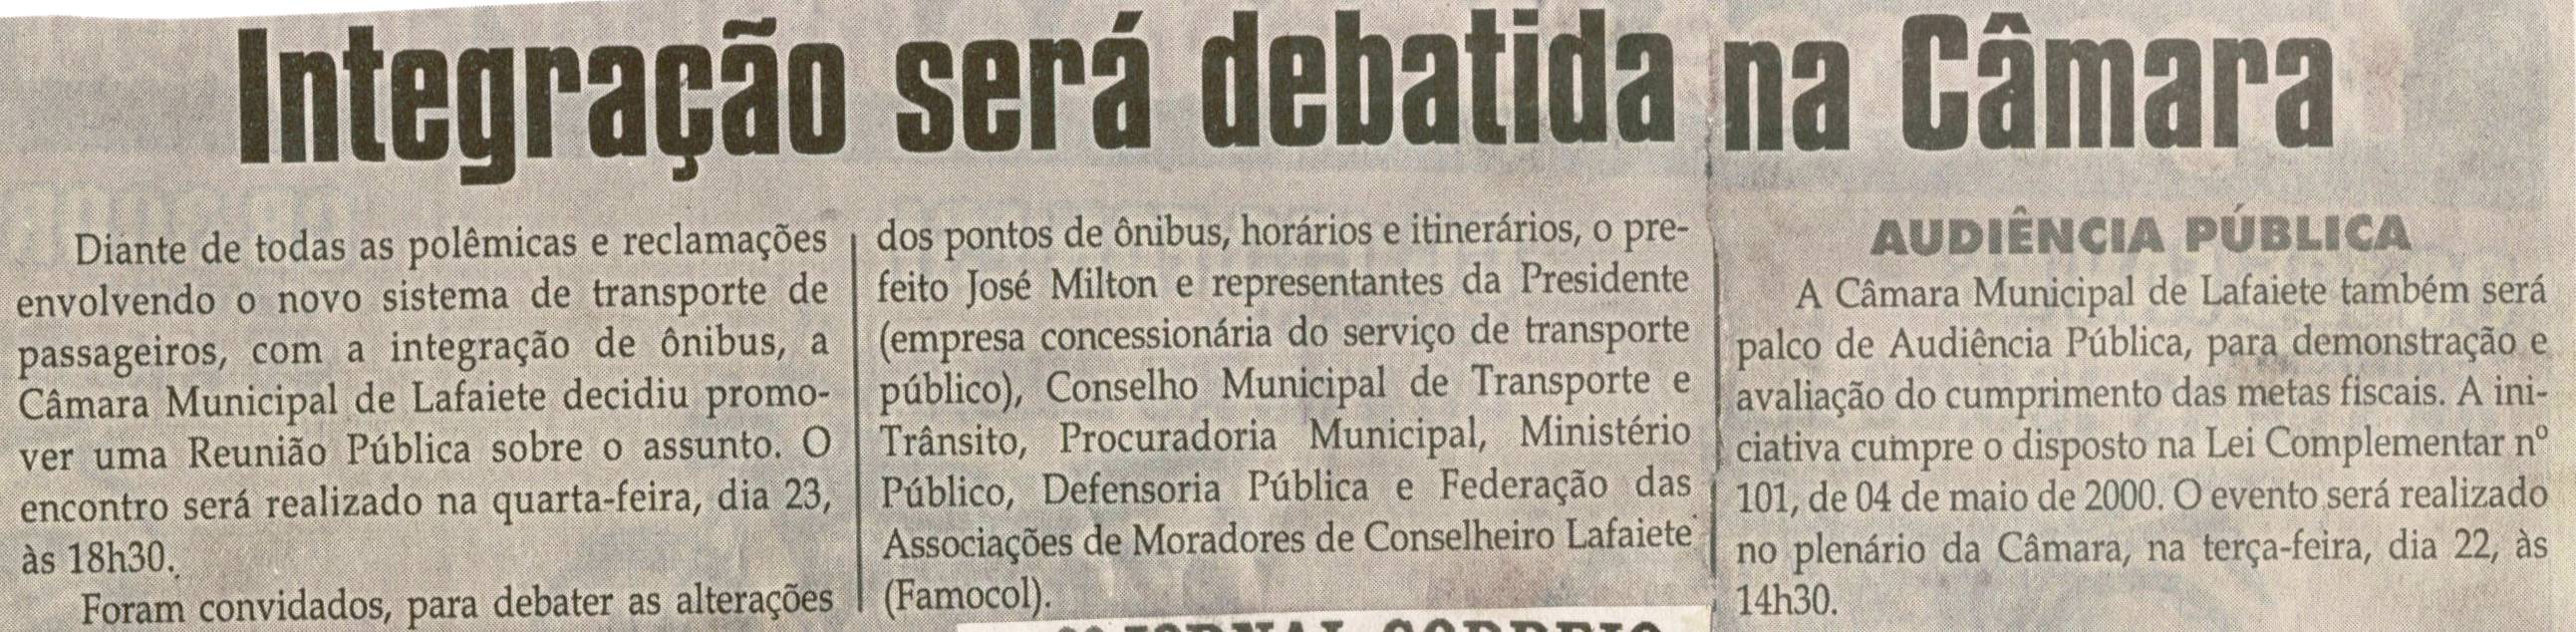 Integração será debatida na Câmara. Jornal Correio da Cidade, 12 mai. 2012, p. 04.